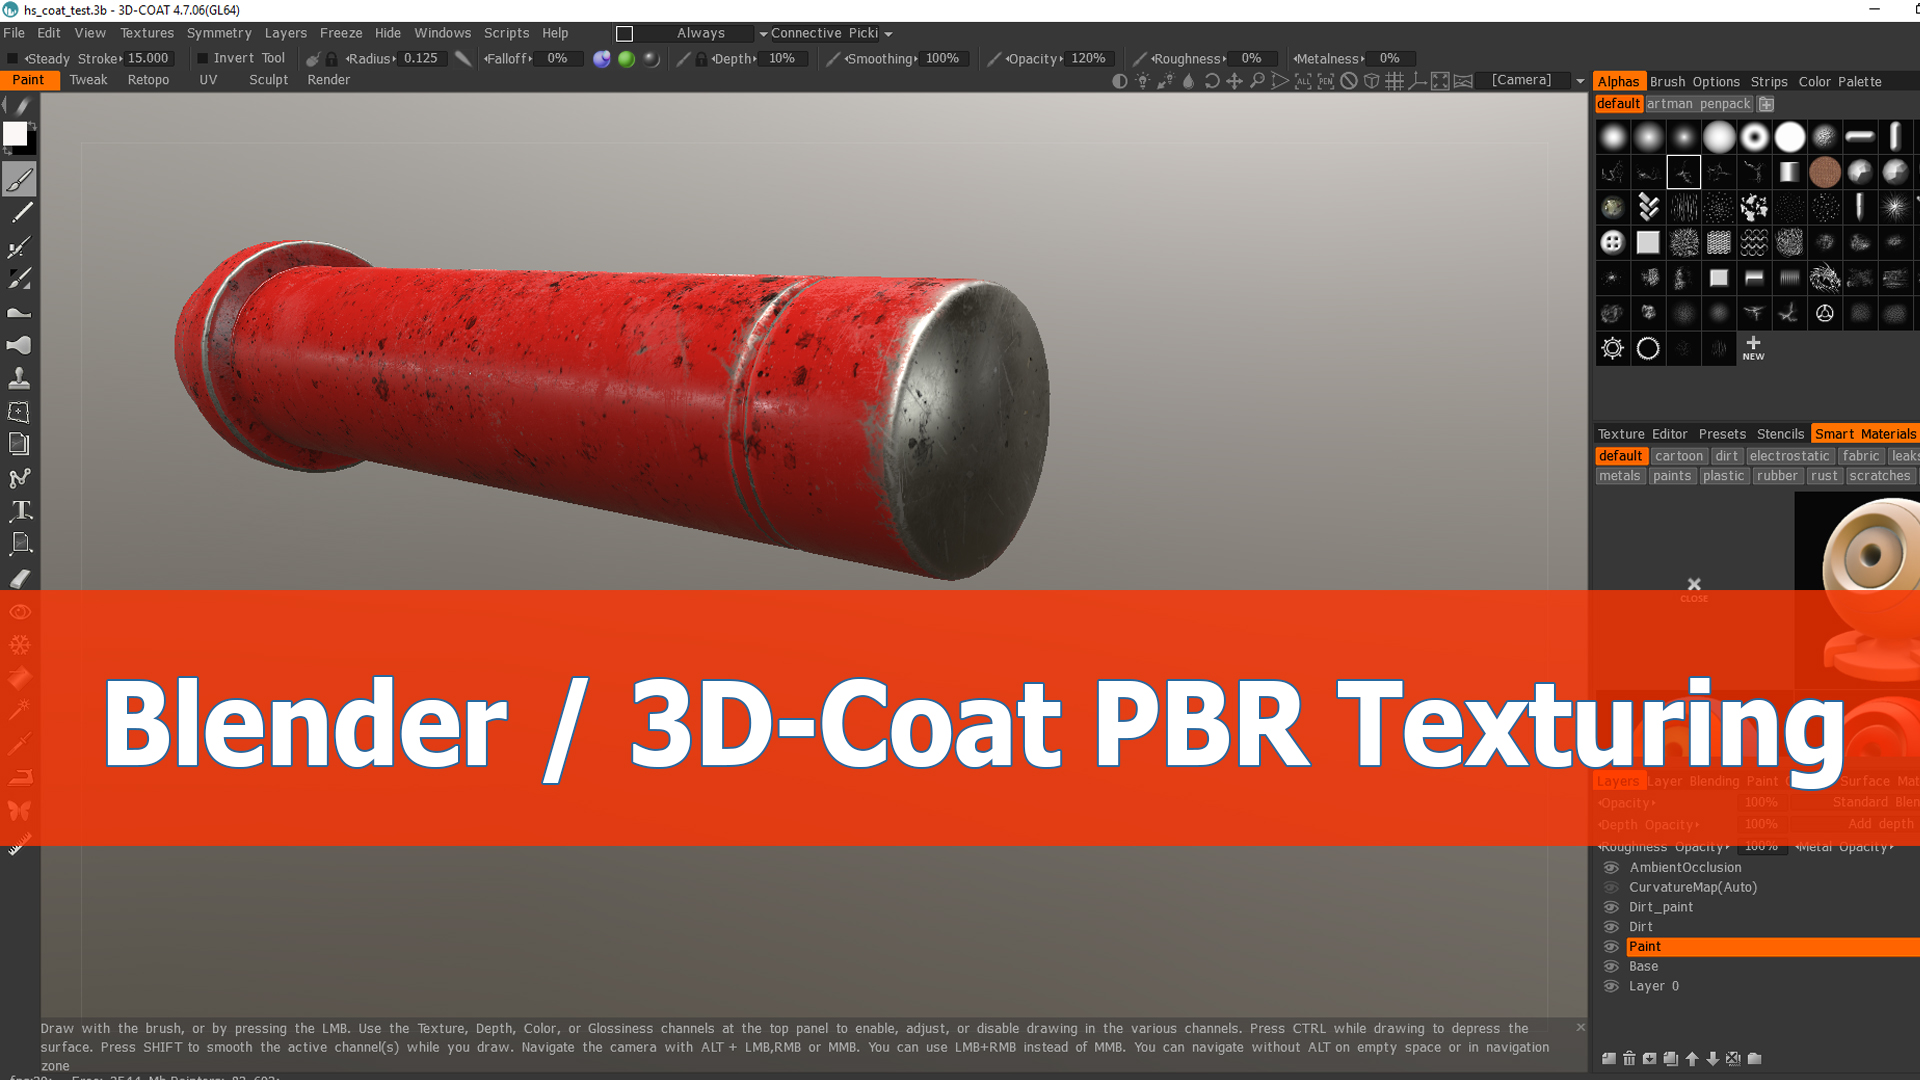 Blender and 3D-Coat workflow for PBR texturing BlenderNation